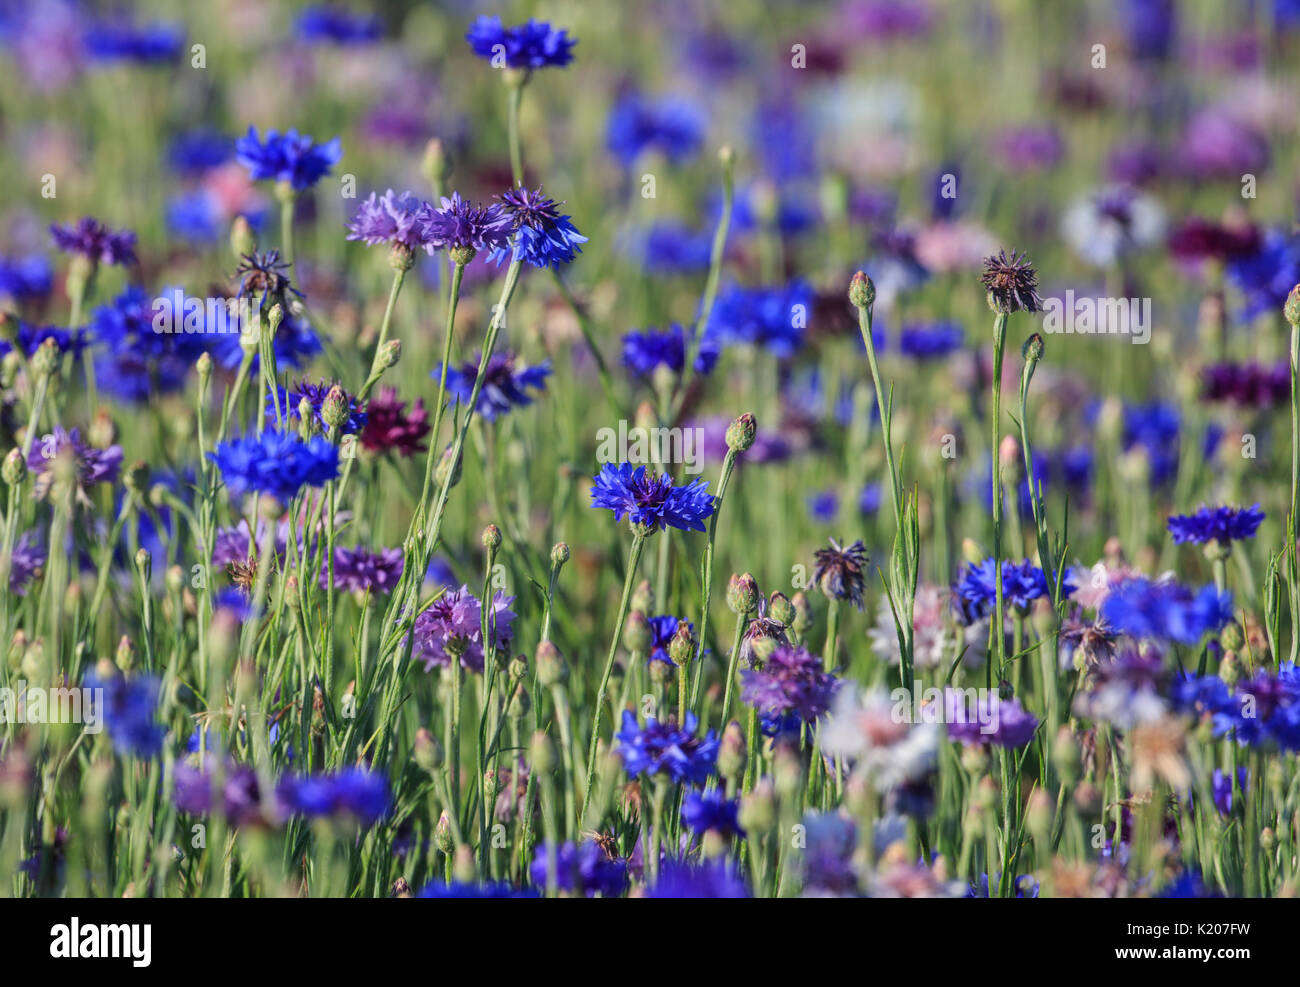 Blau Bachelor- Schaltfläche Blumen in einem Feld Stockfoto